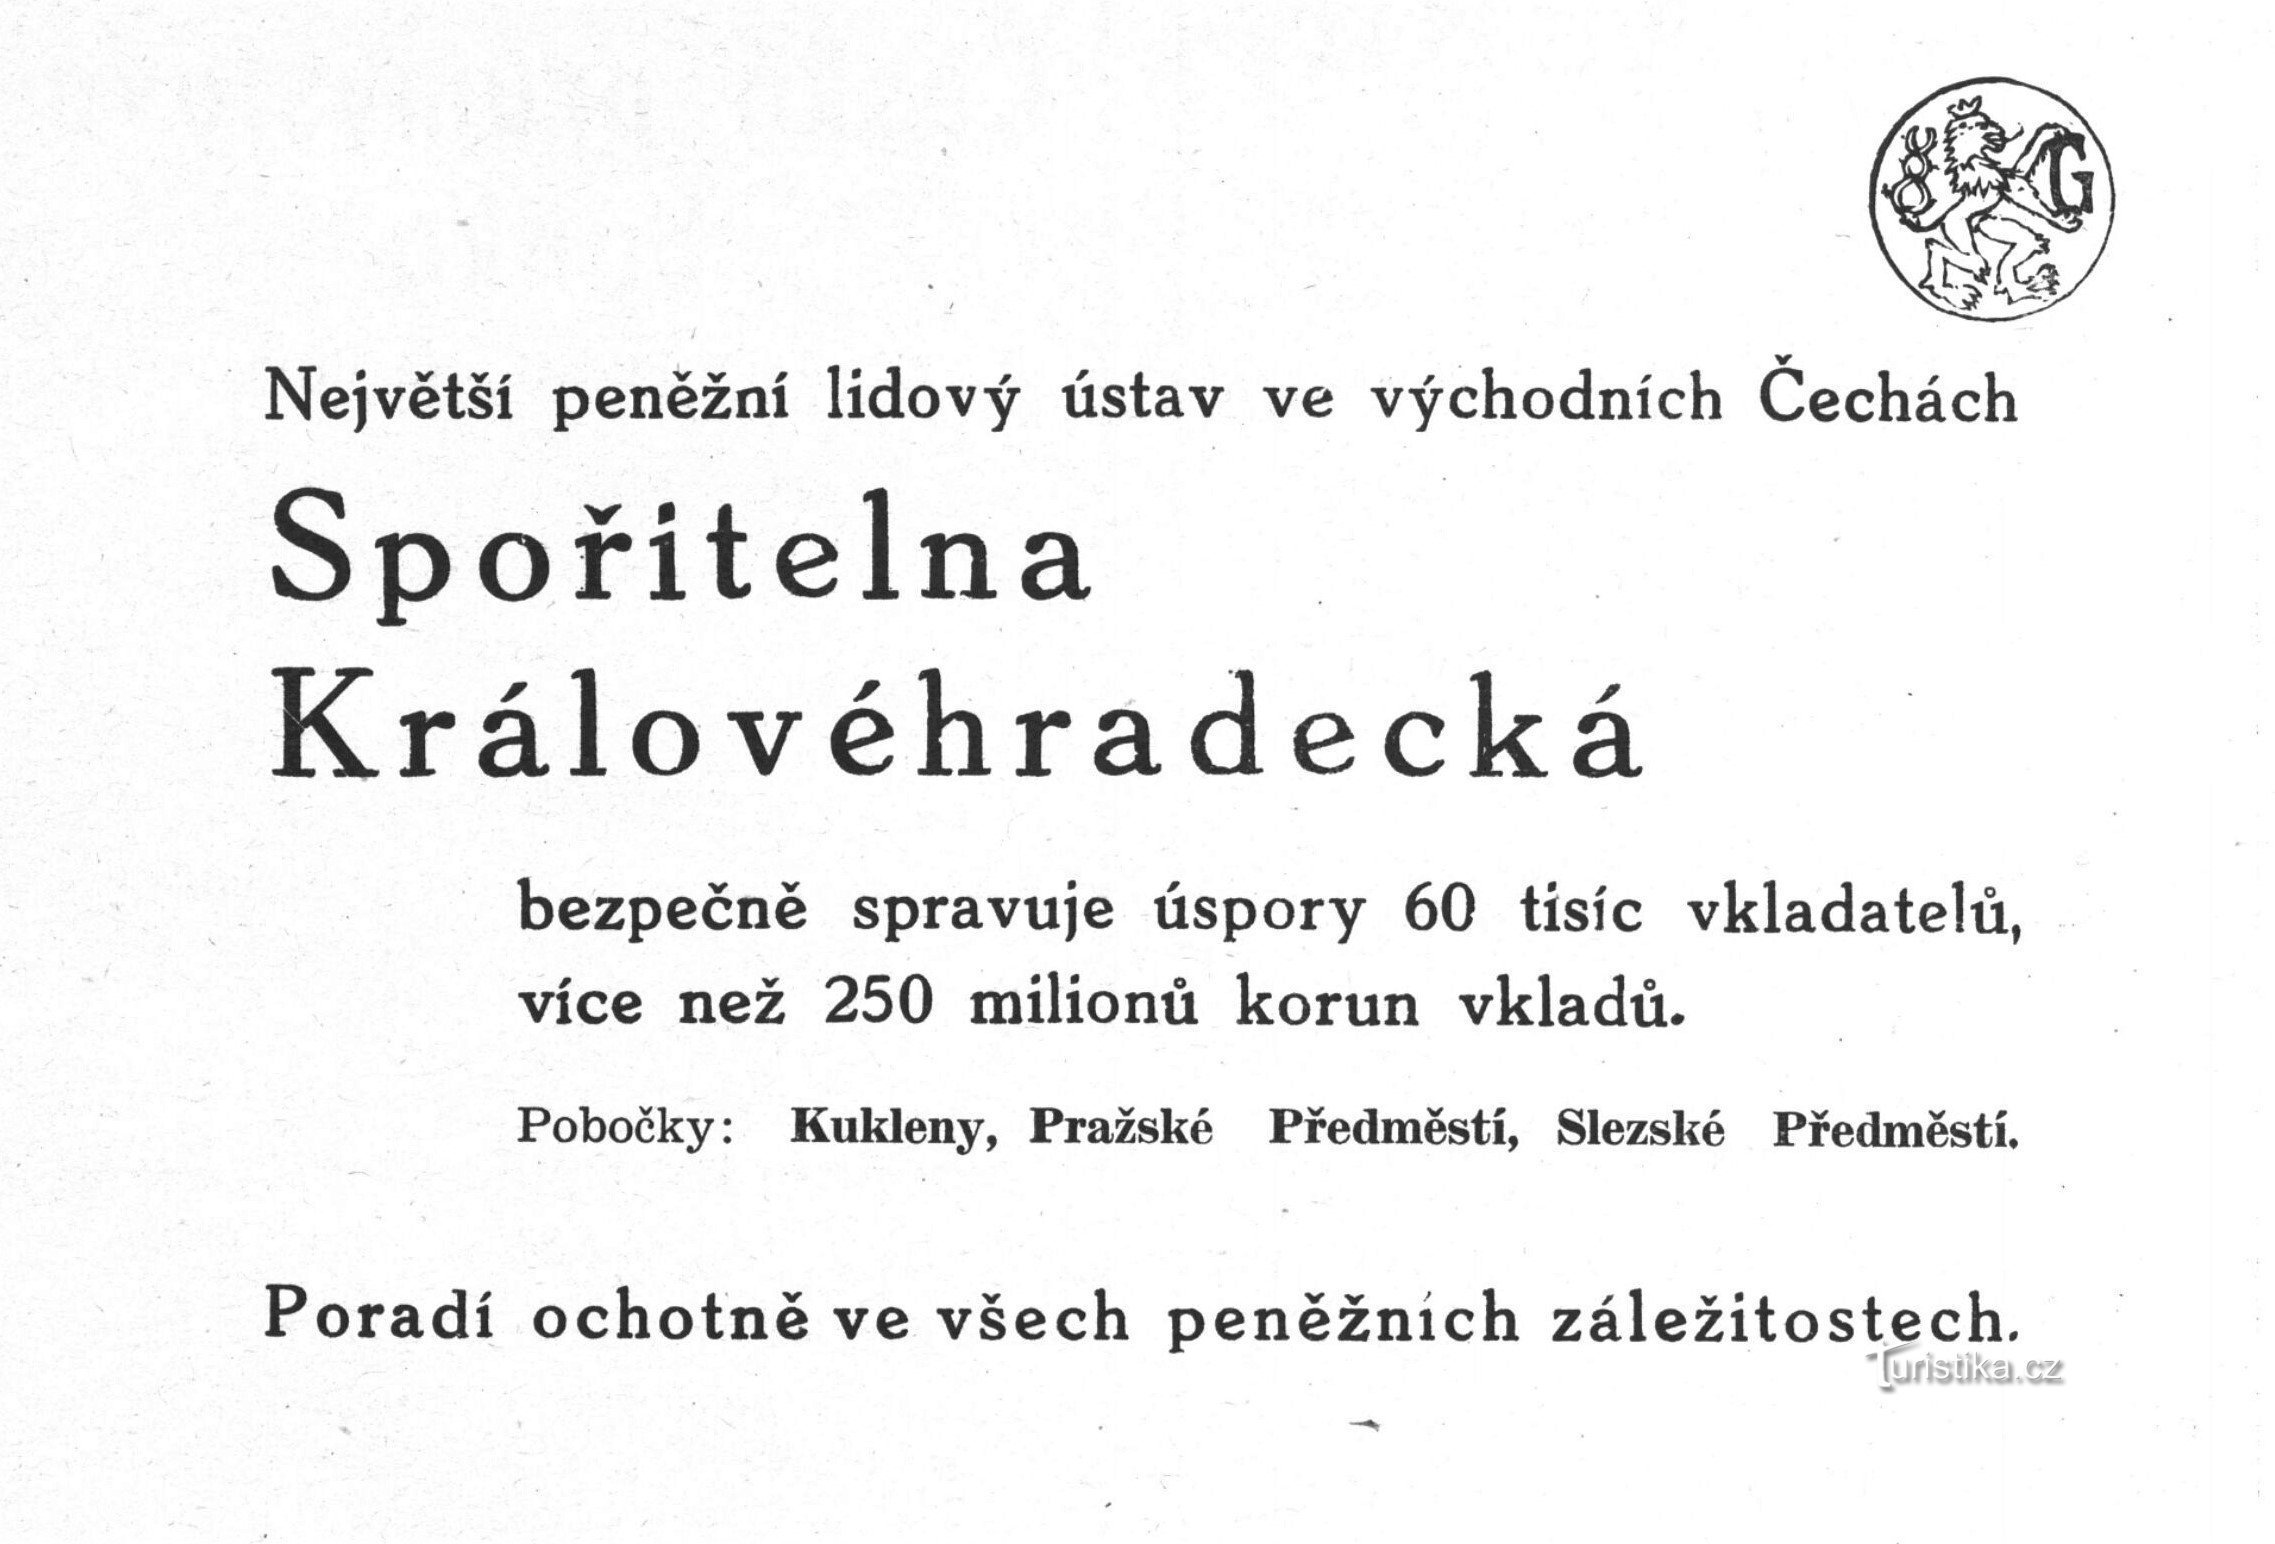 Реклама Spořitelna Královéhradecké з 1941 року